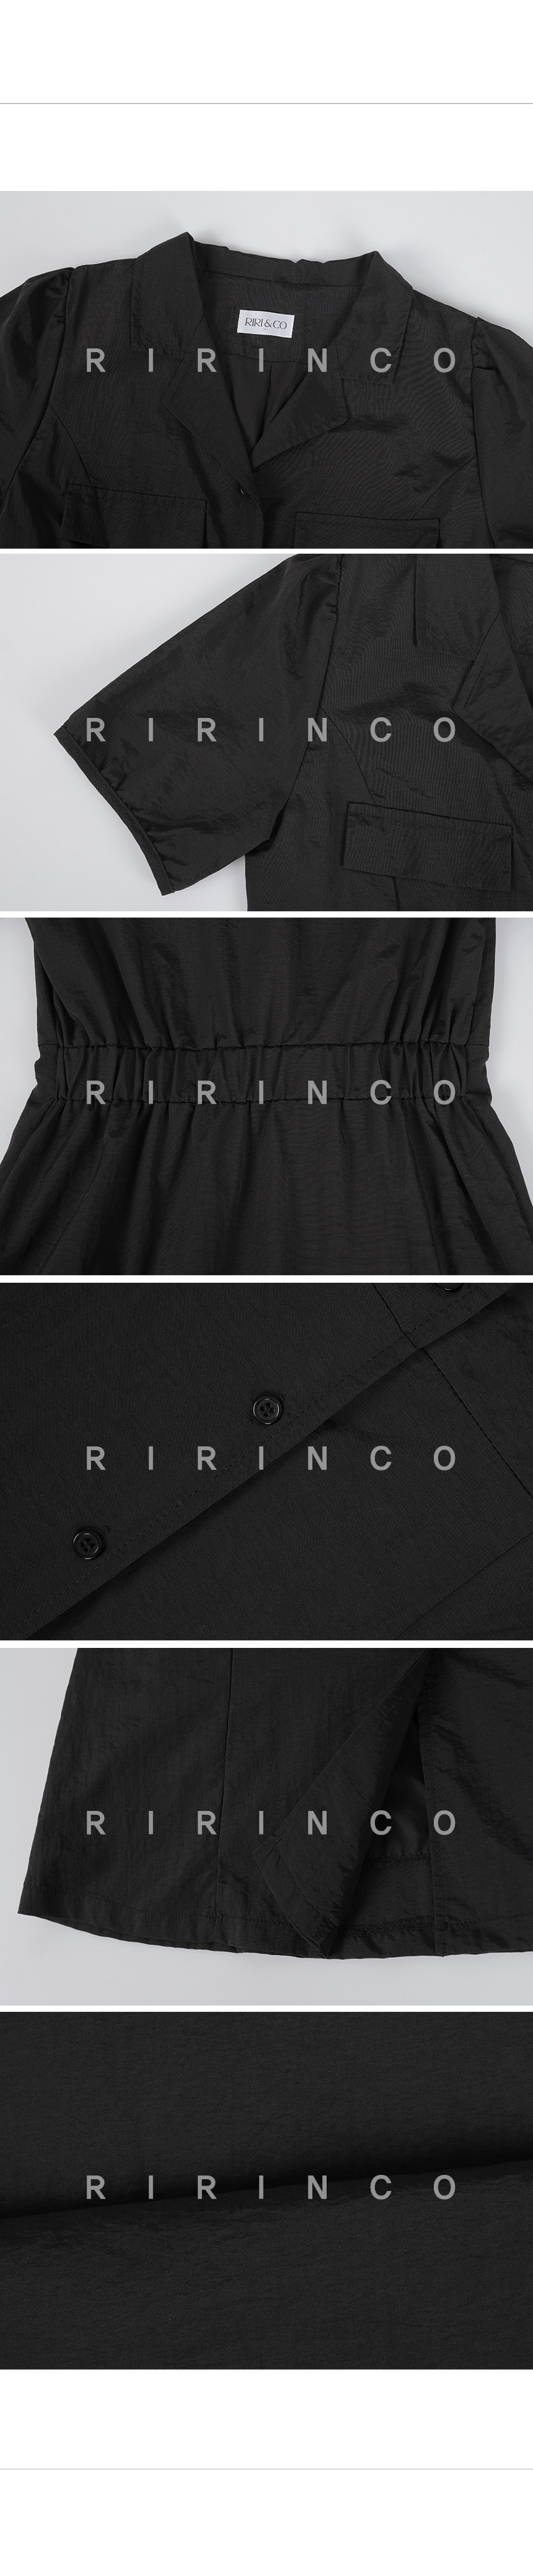 RIRINCO  オープンカラーバックゴムロングワンピース